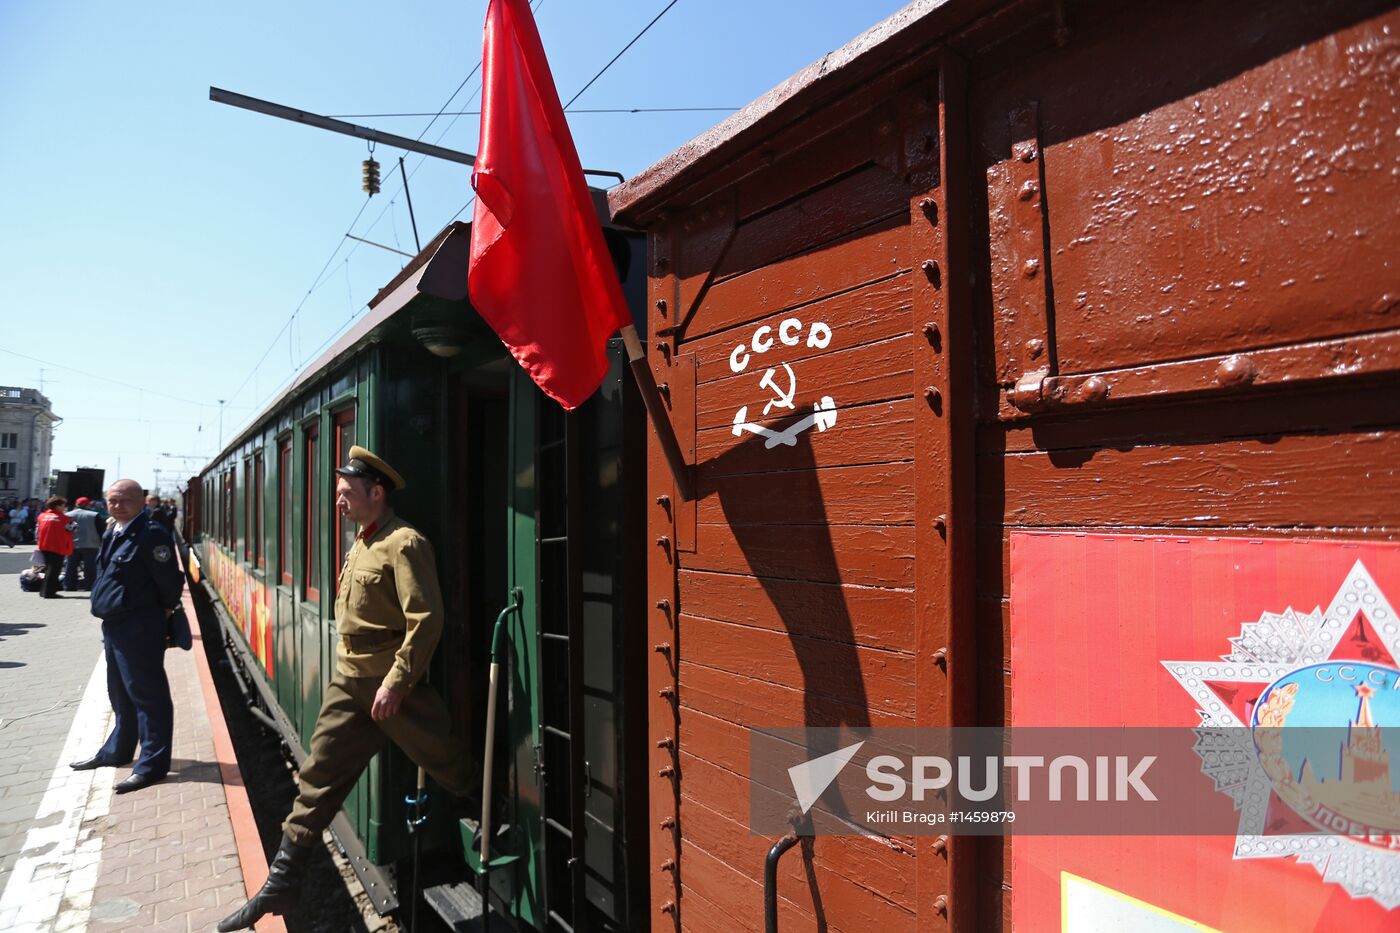 Retro train "Victory" arrives in Volgograd